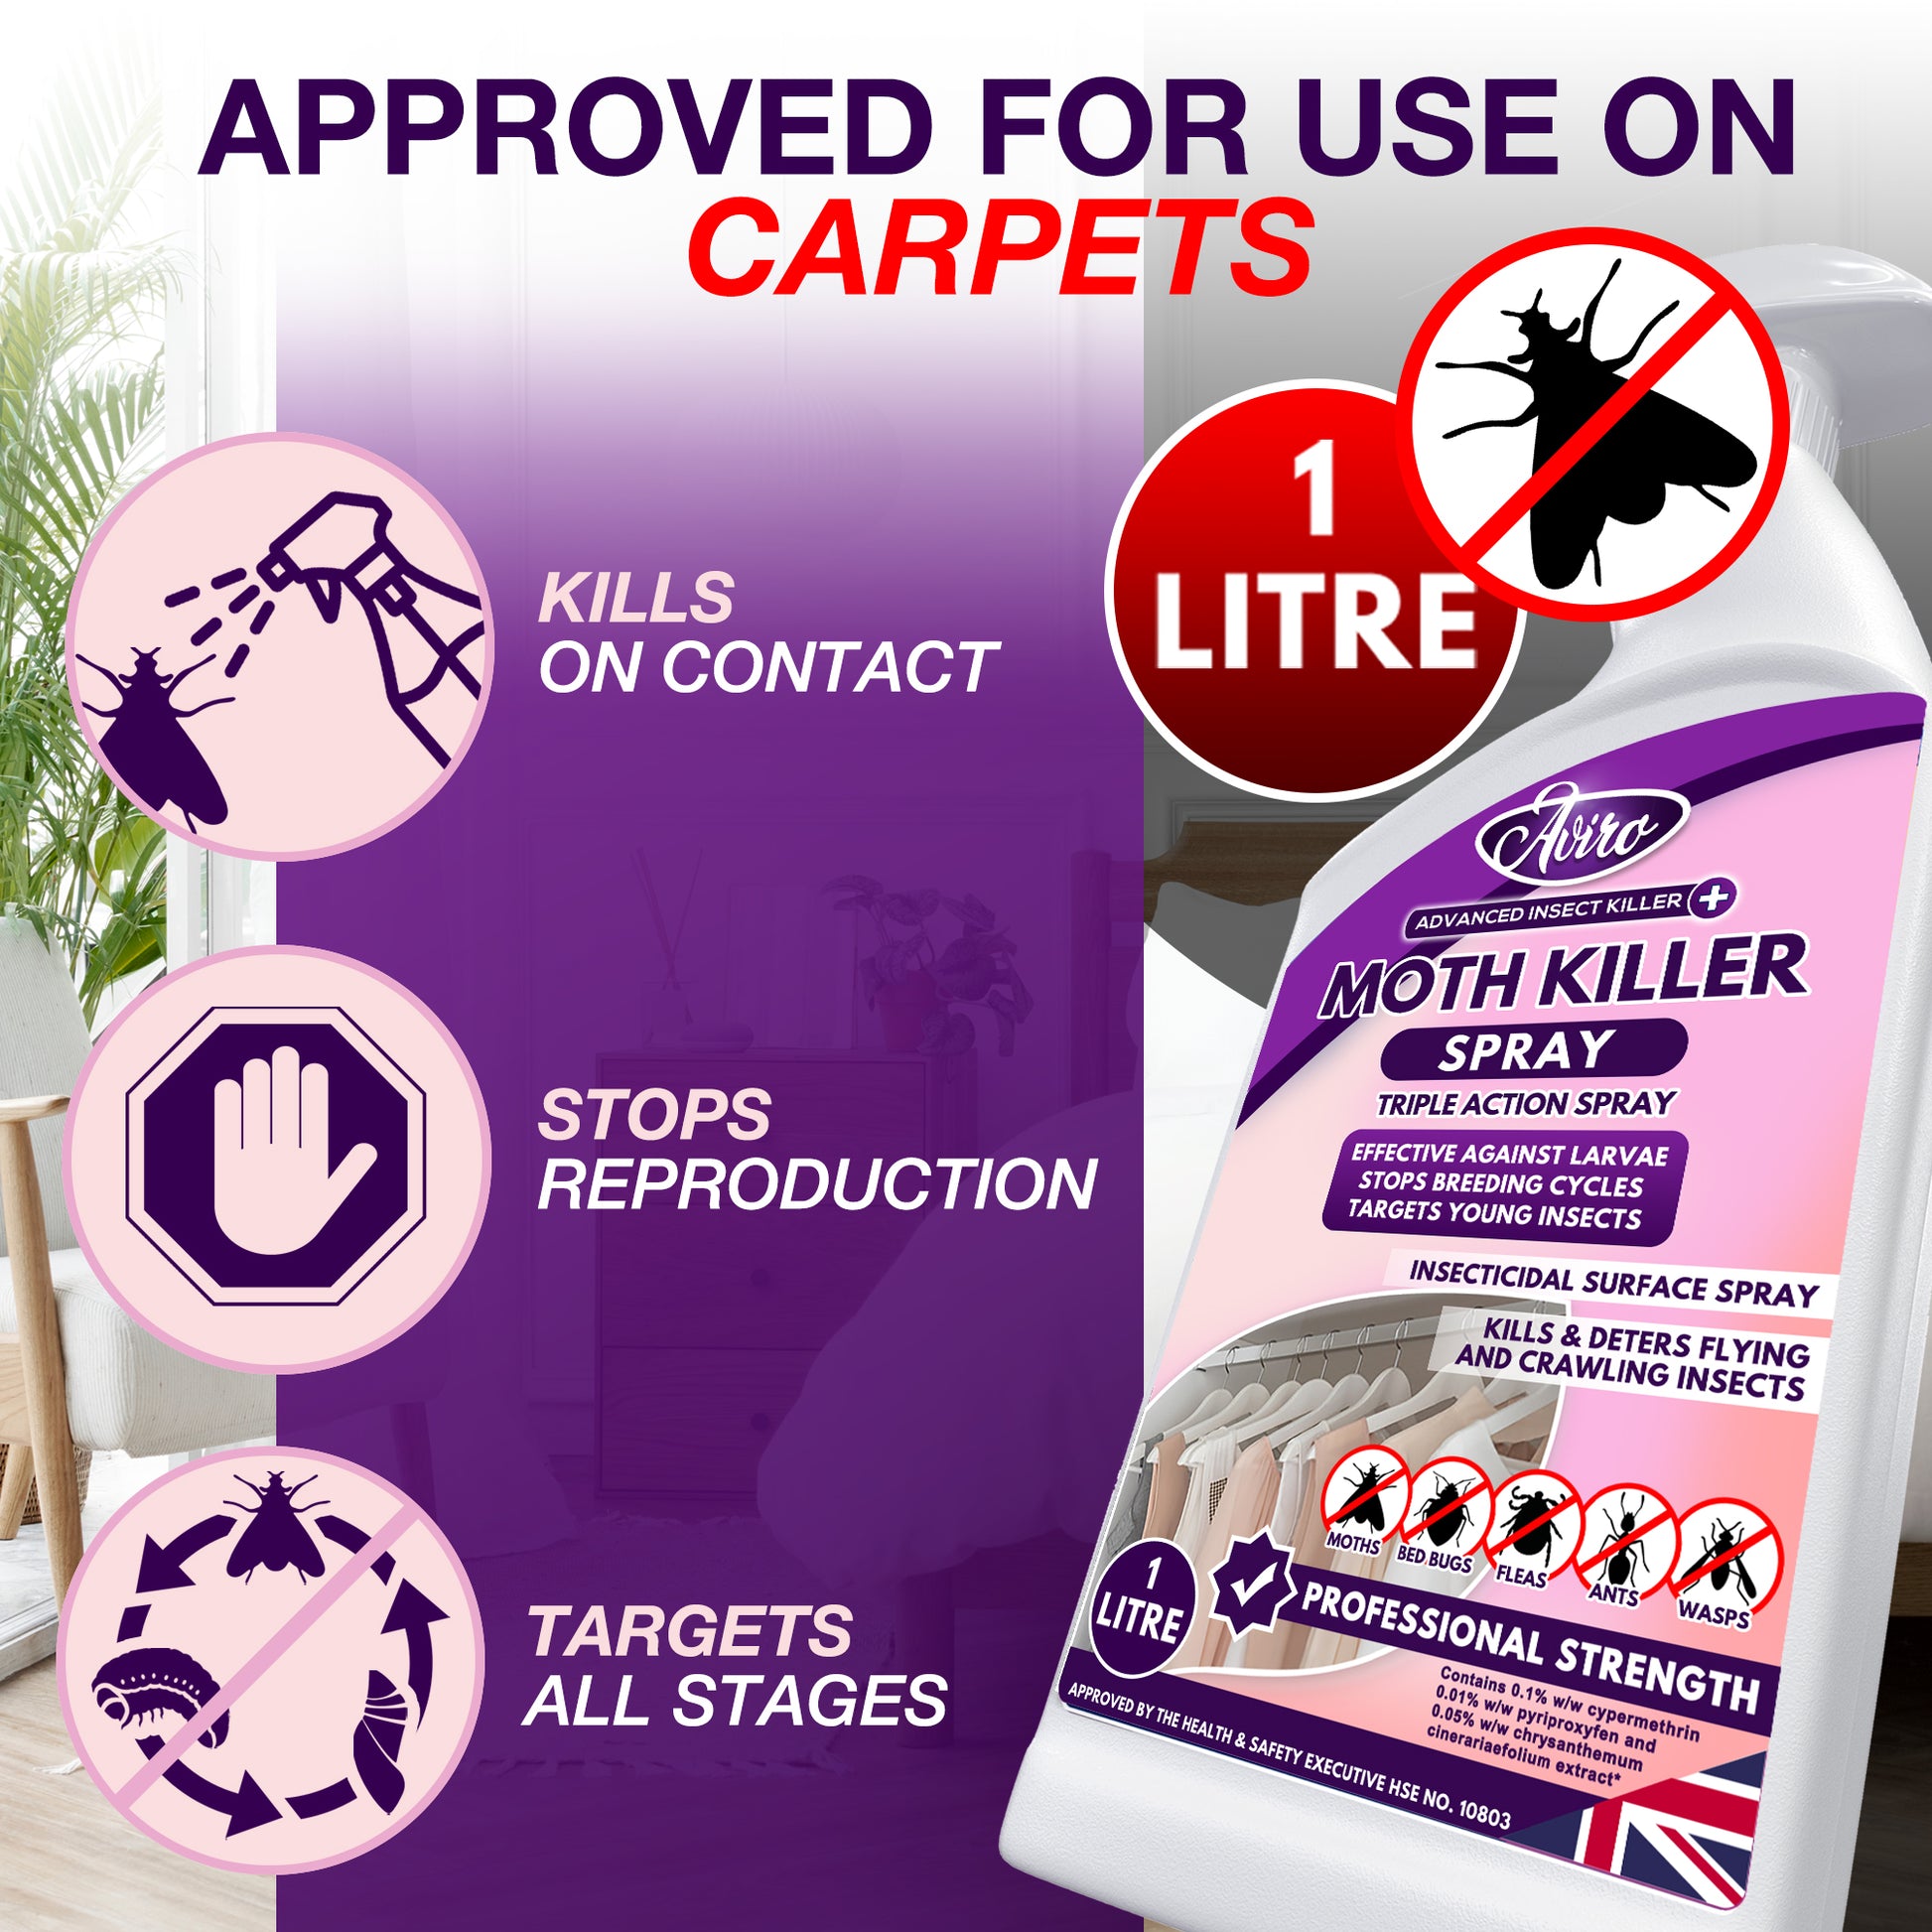 aviro-moth-killer-spray-1-liter-use-view-carpet-approved